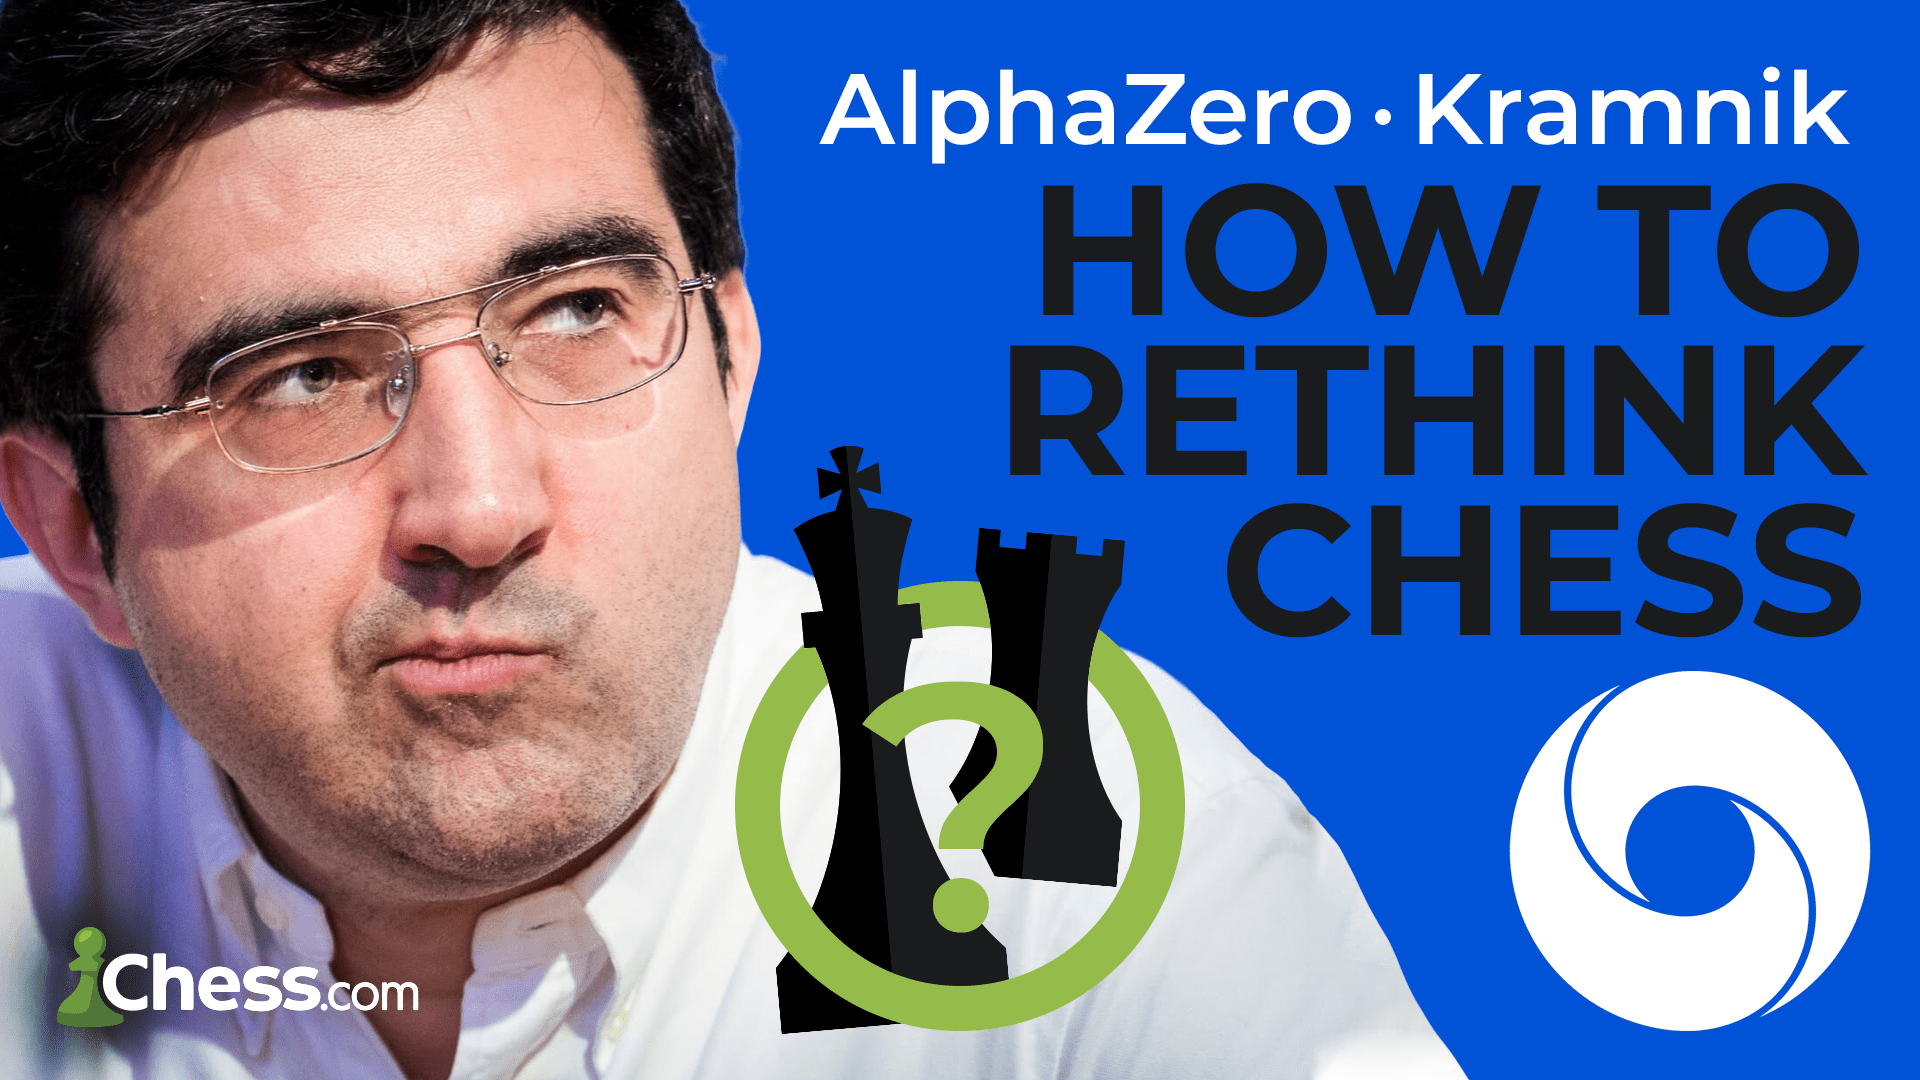 AlphaZero analyses, Kramnik explains